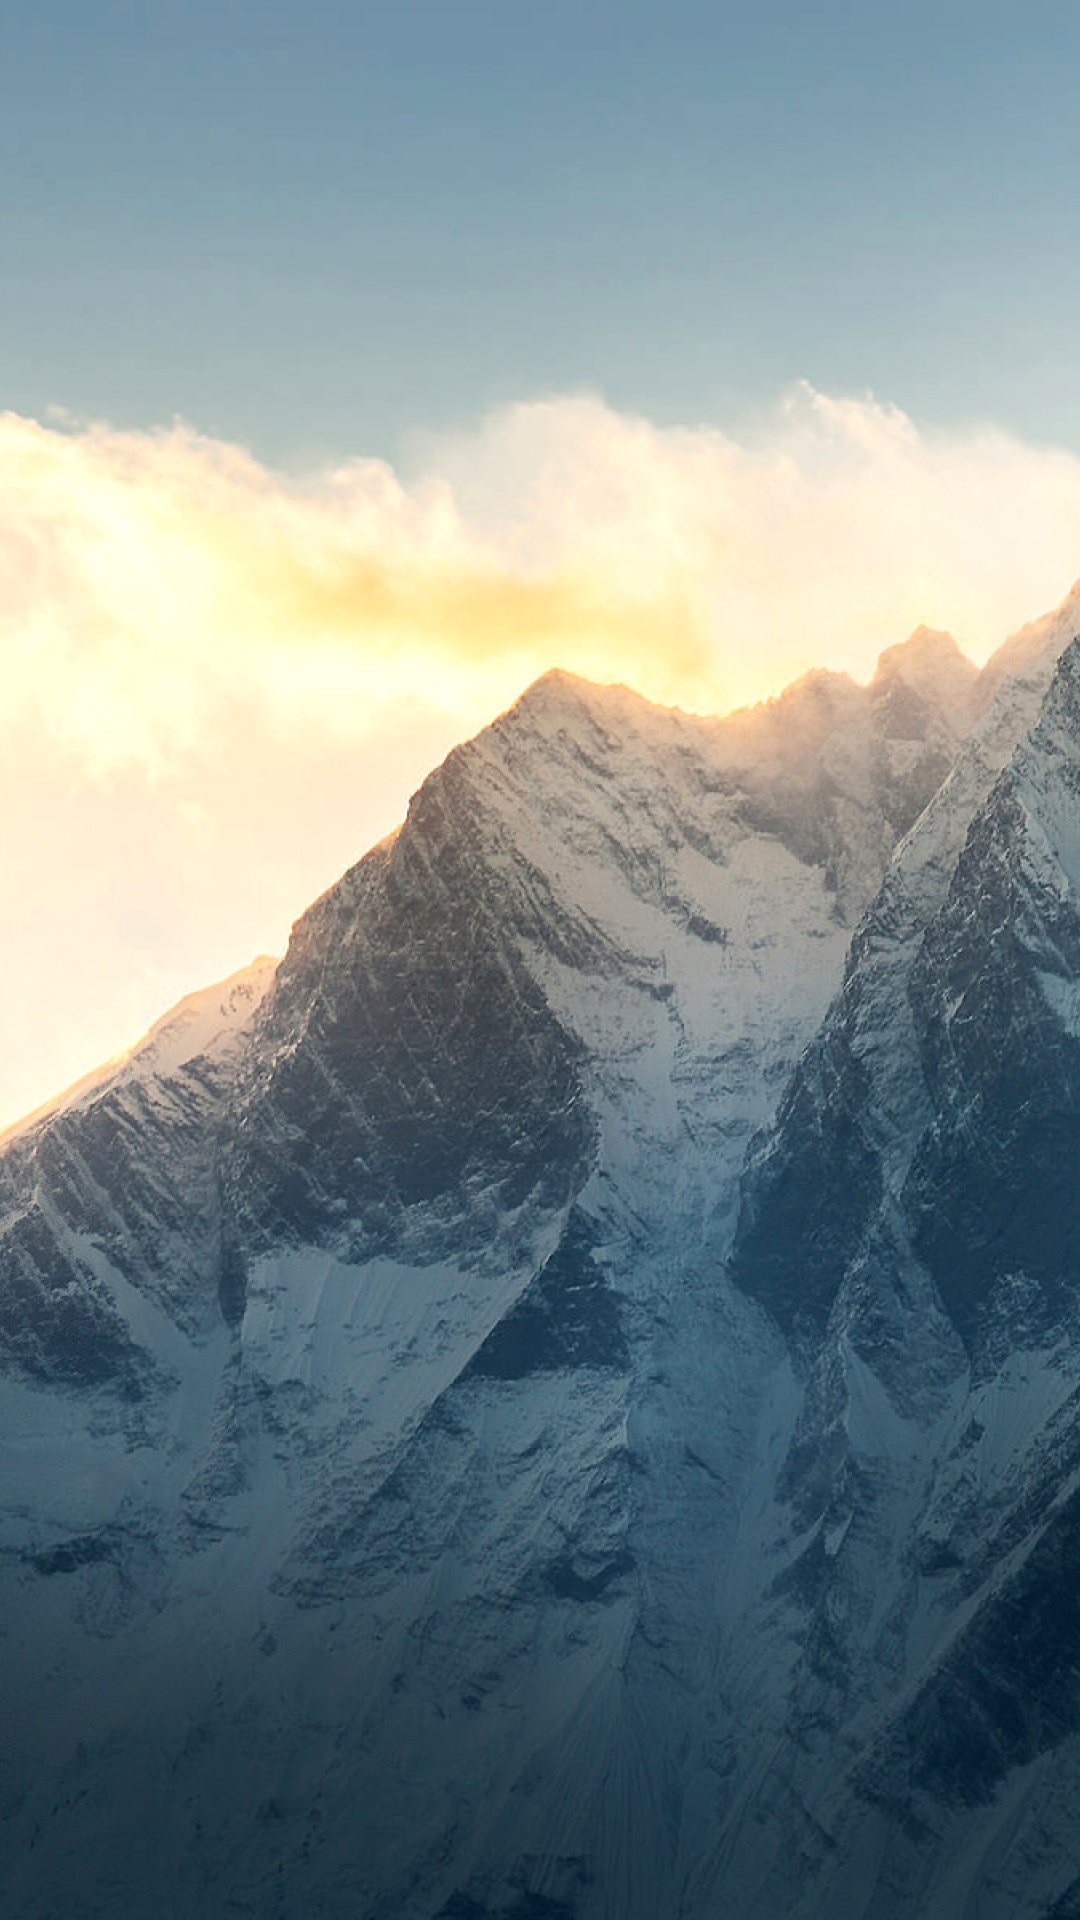 Обои Everest in Nepal 1080x1920